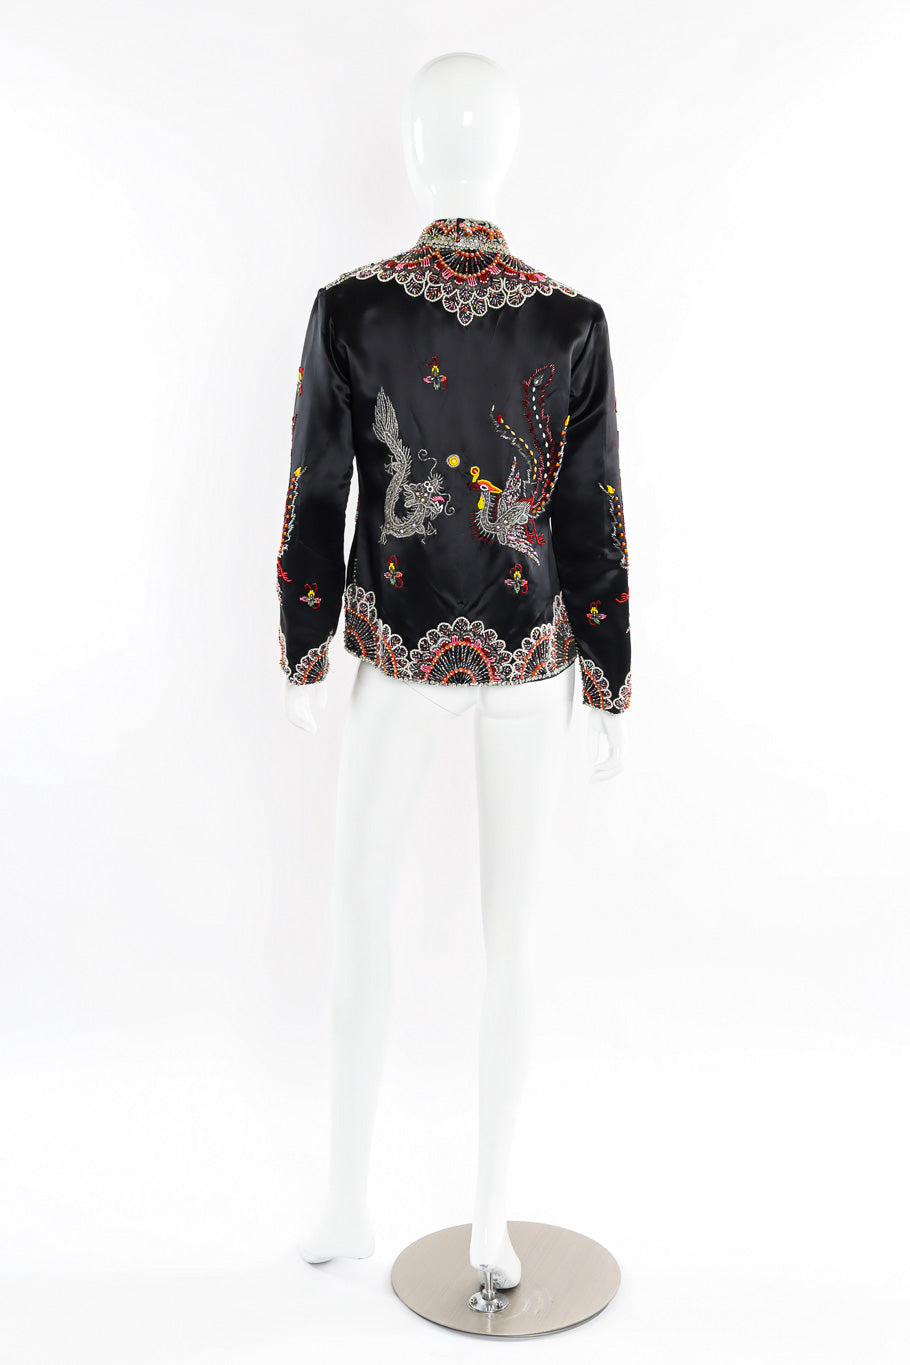 Vintage Dynasty Dragon Phoenix Embellished Silk Jacket back on mannequin @recessla